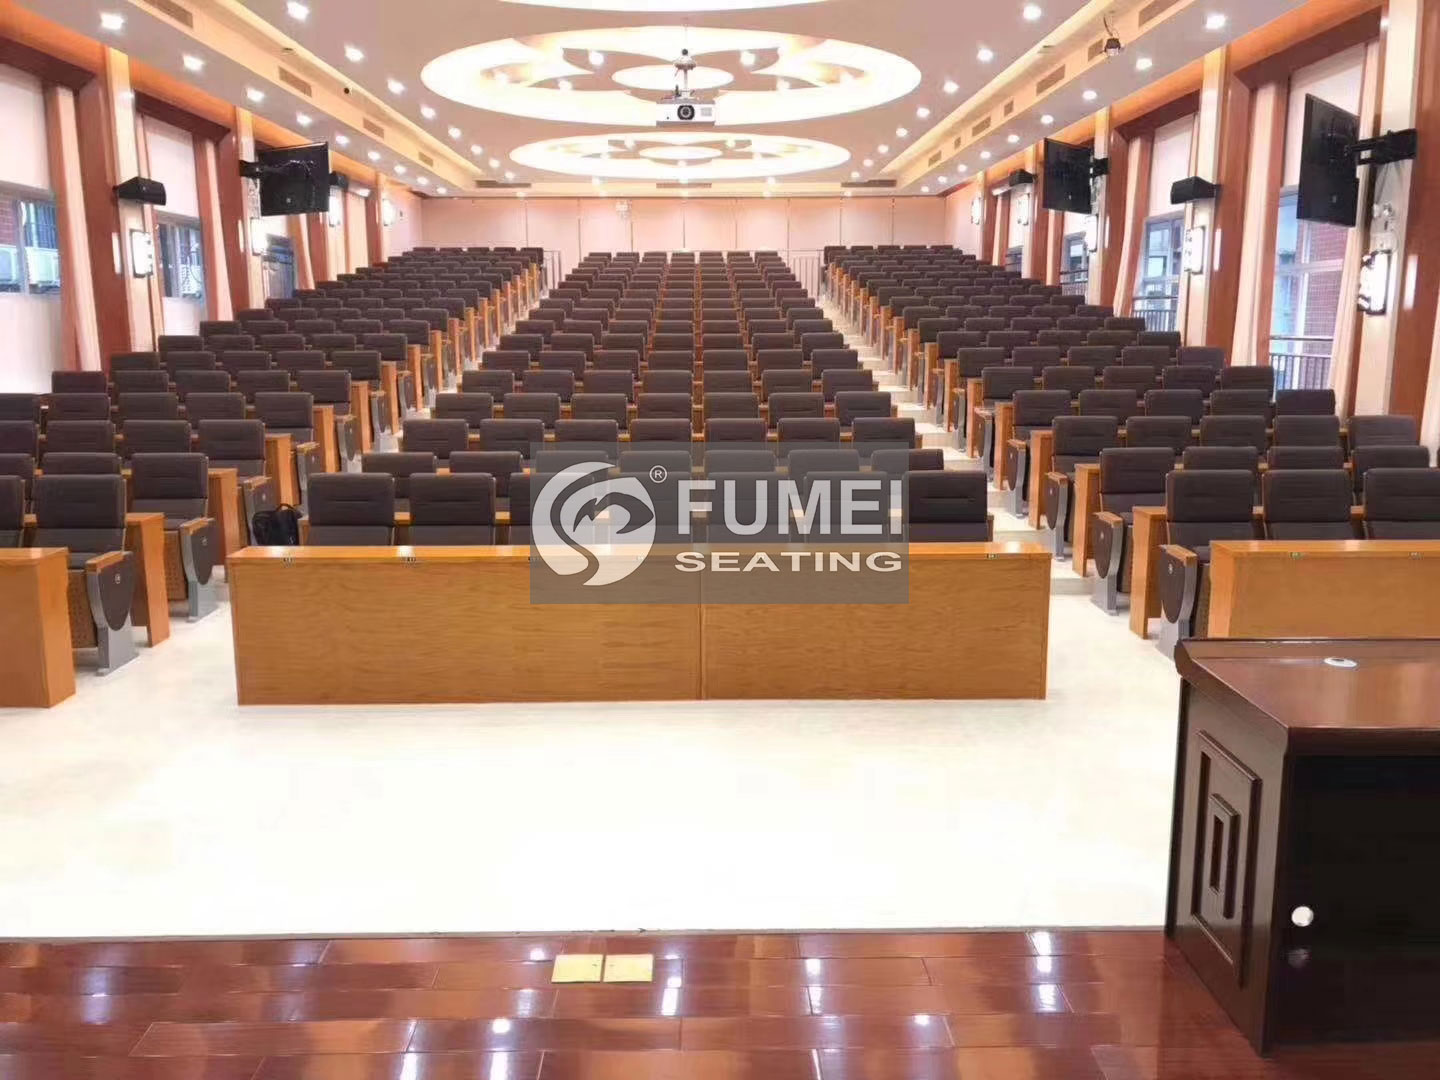 FM-272 auditorium chair case